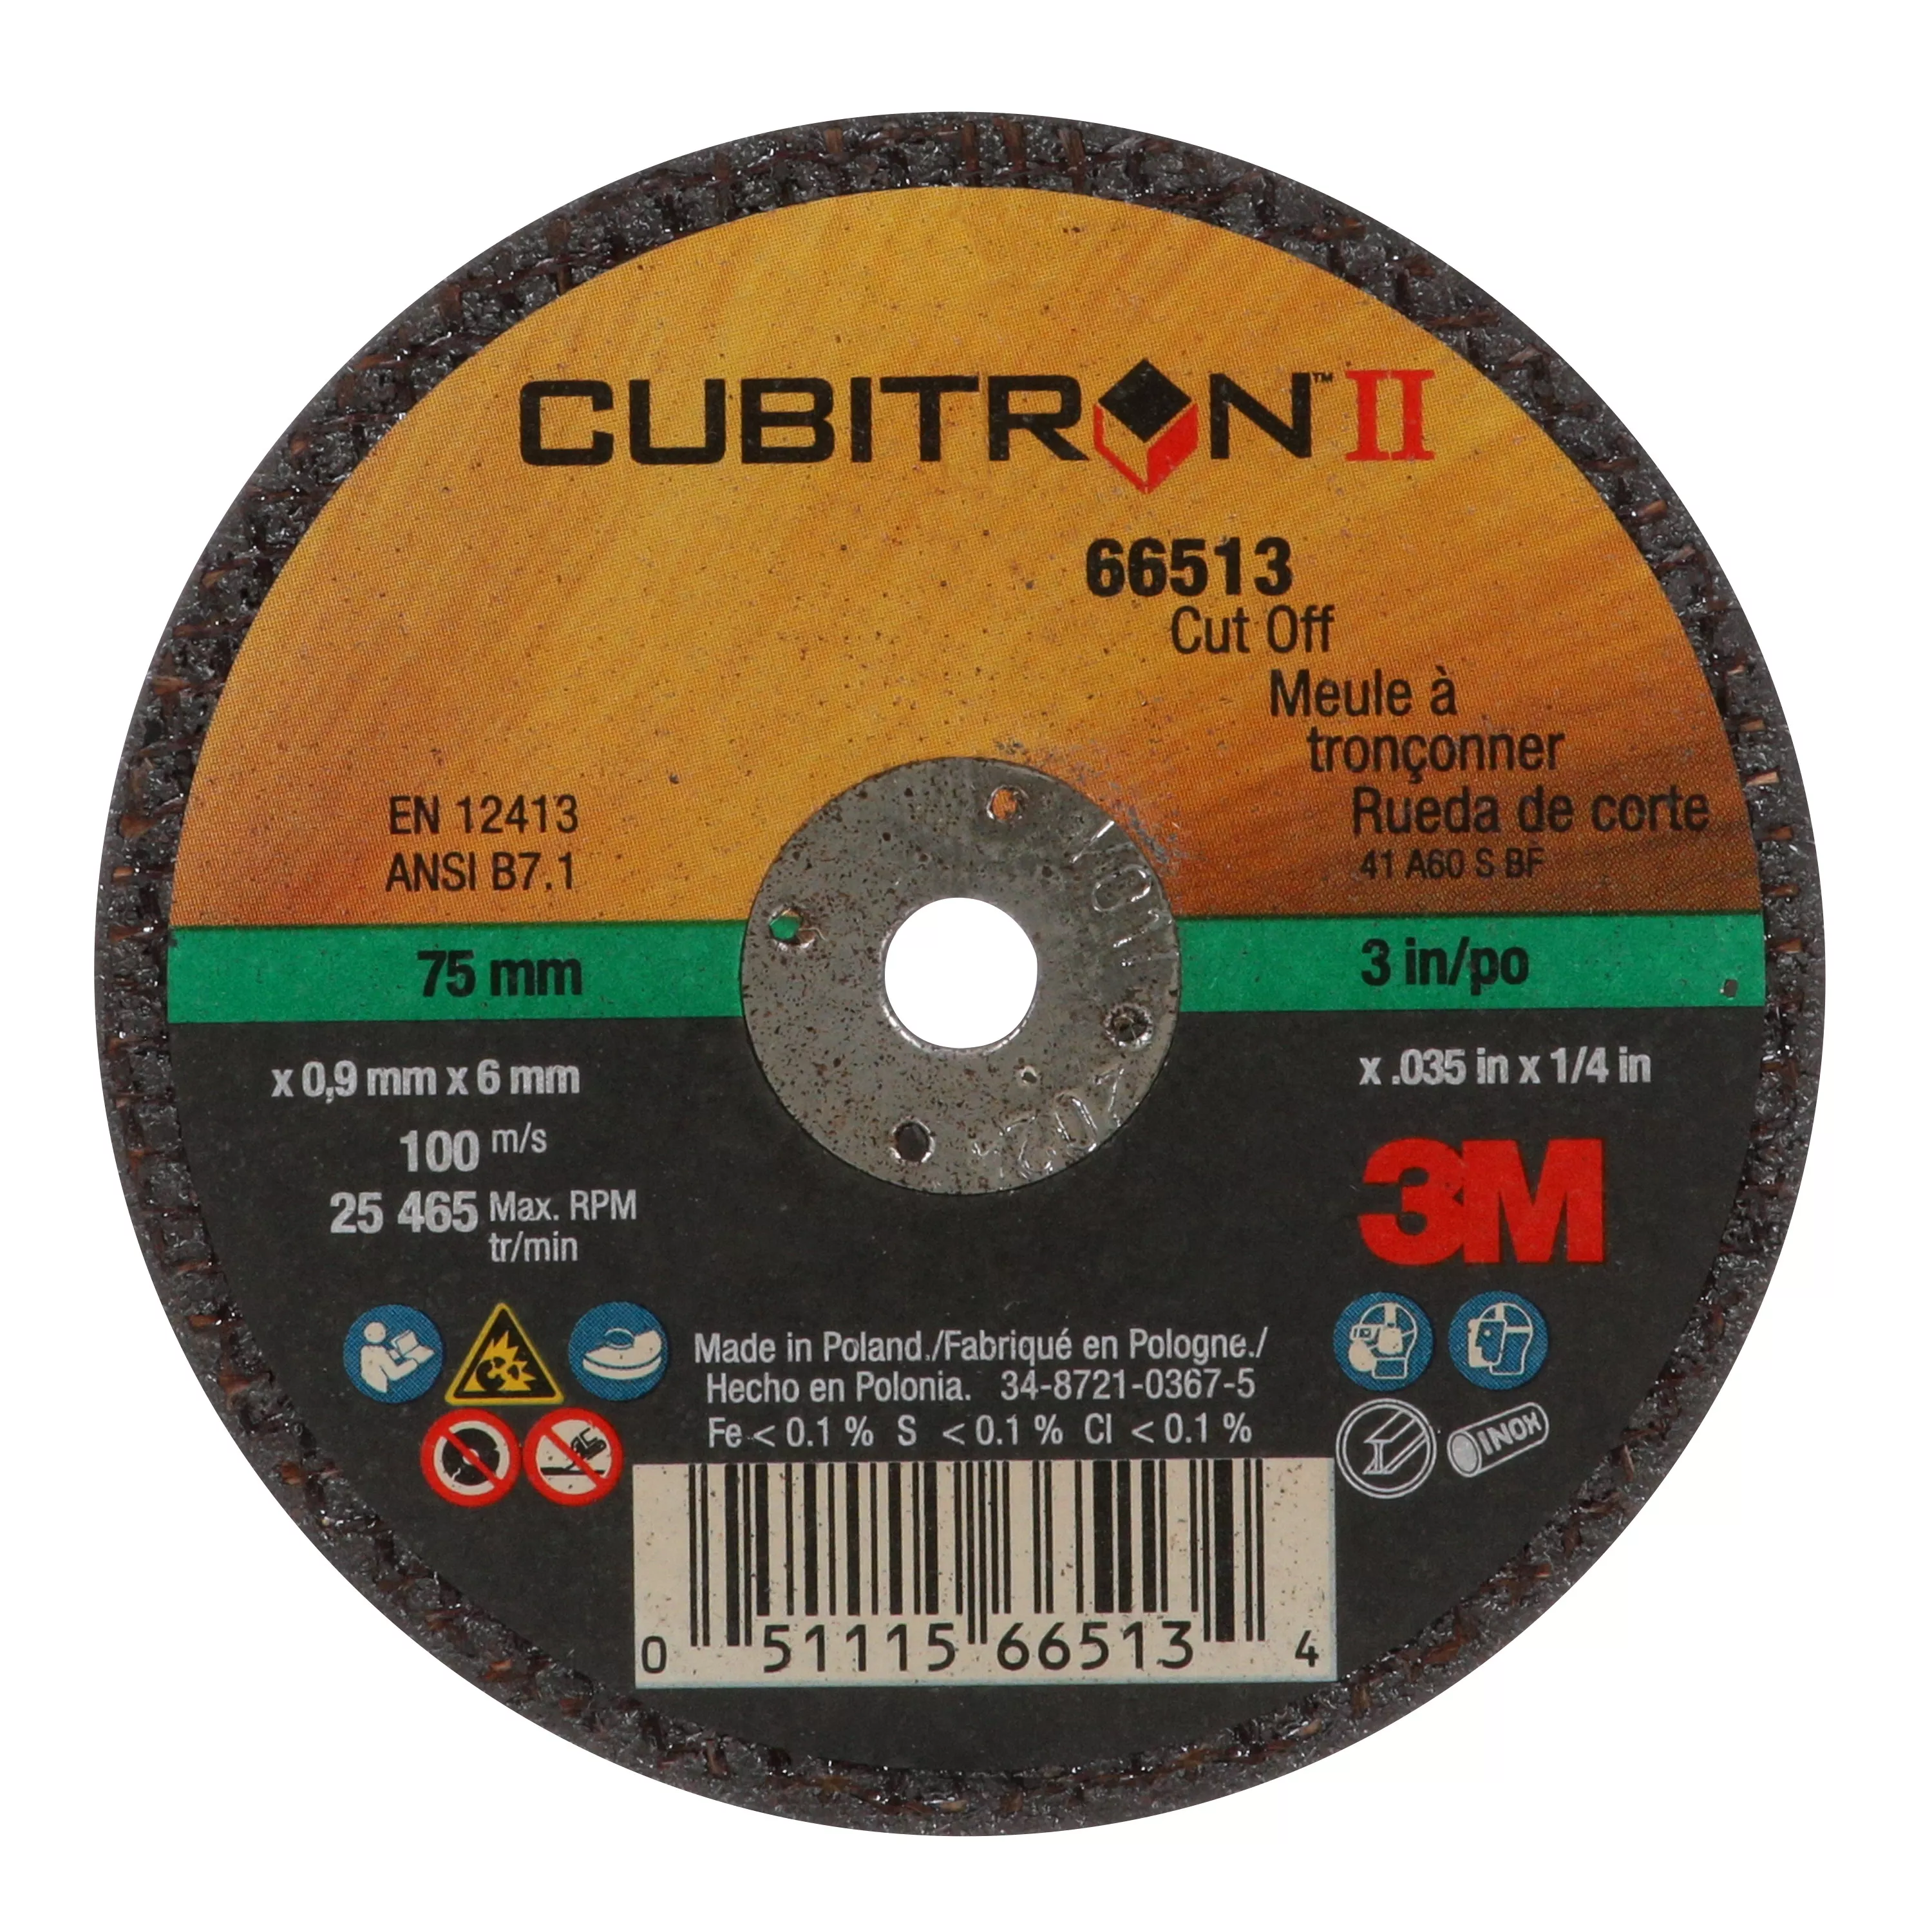 3M™ Cubitron™ II Cut-Off Wheel, 66513, 60, Type 1, 3 in x 0.035 in x 1/4 in, 25/Carton, 50 ea/Case